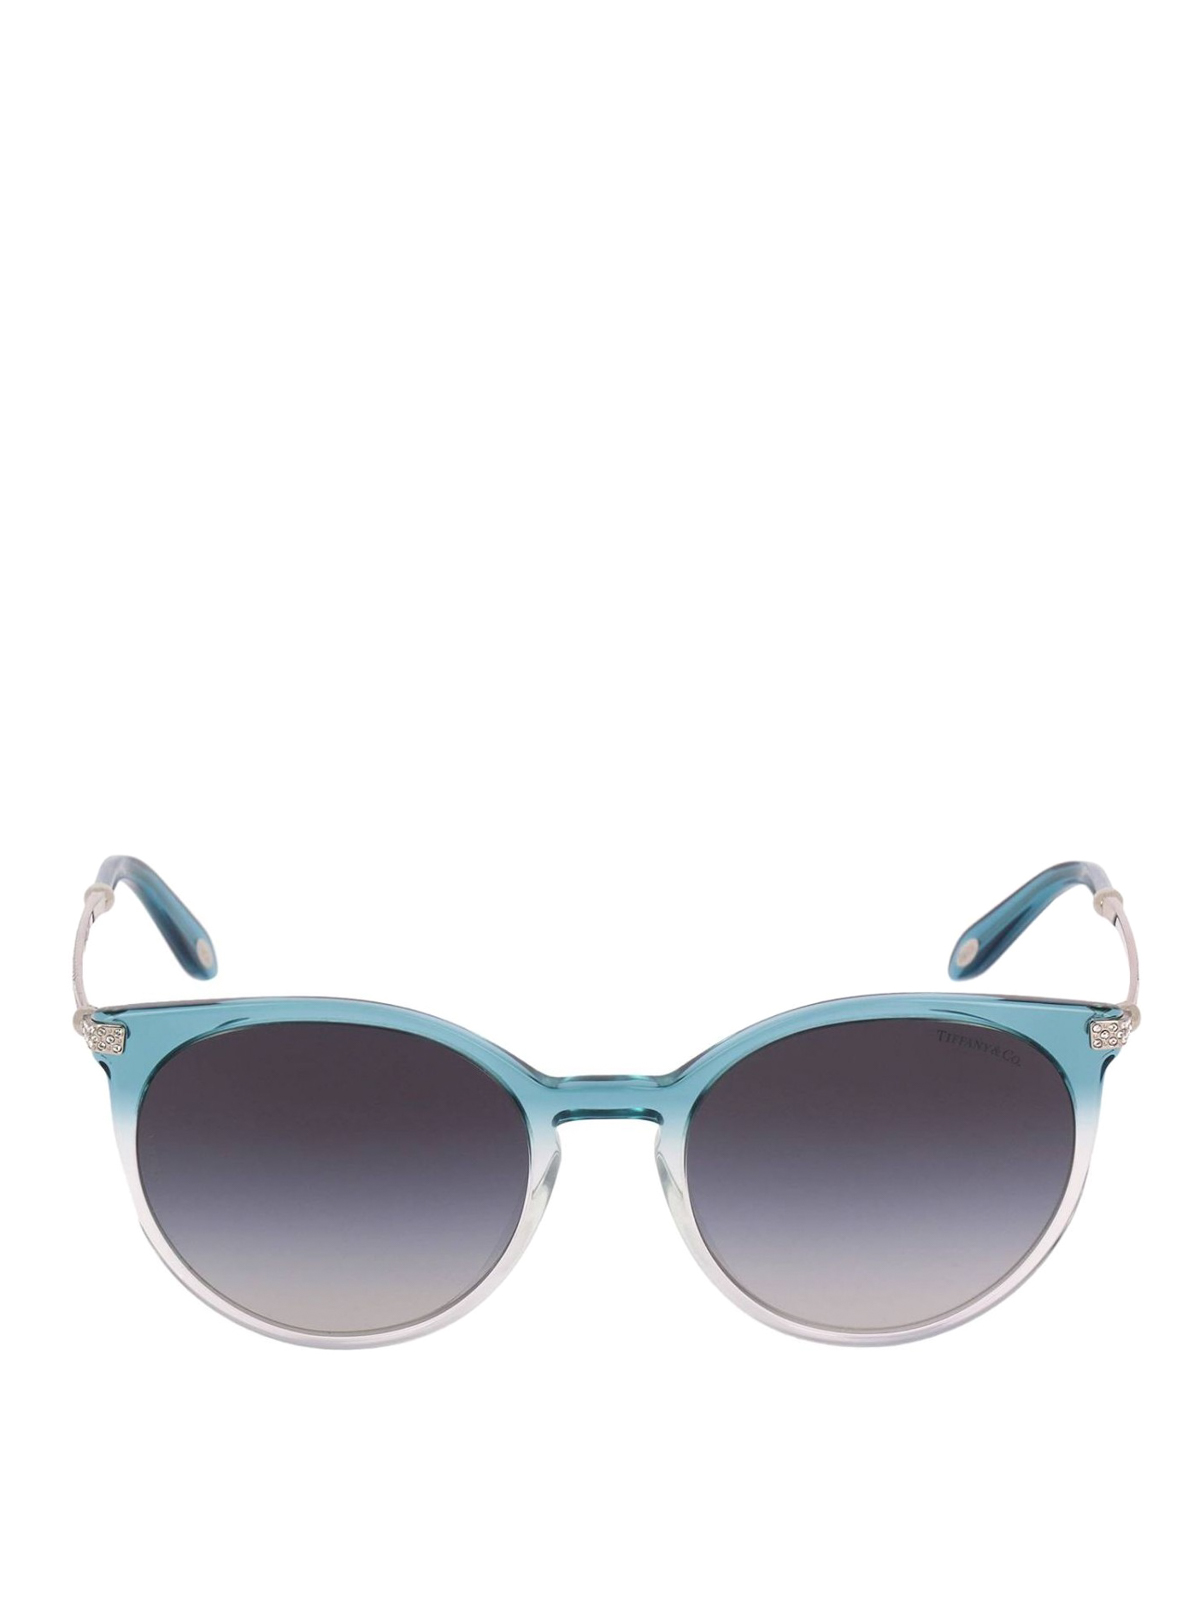 Tiffany Sunglasses 2024 - Misty Teressa